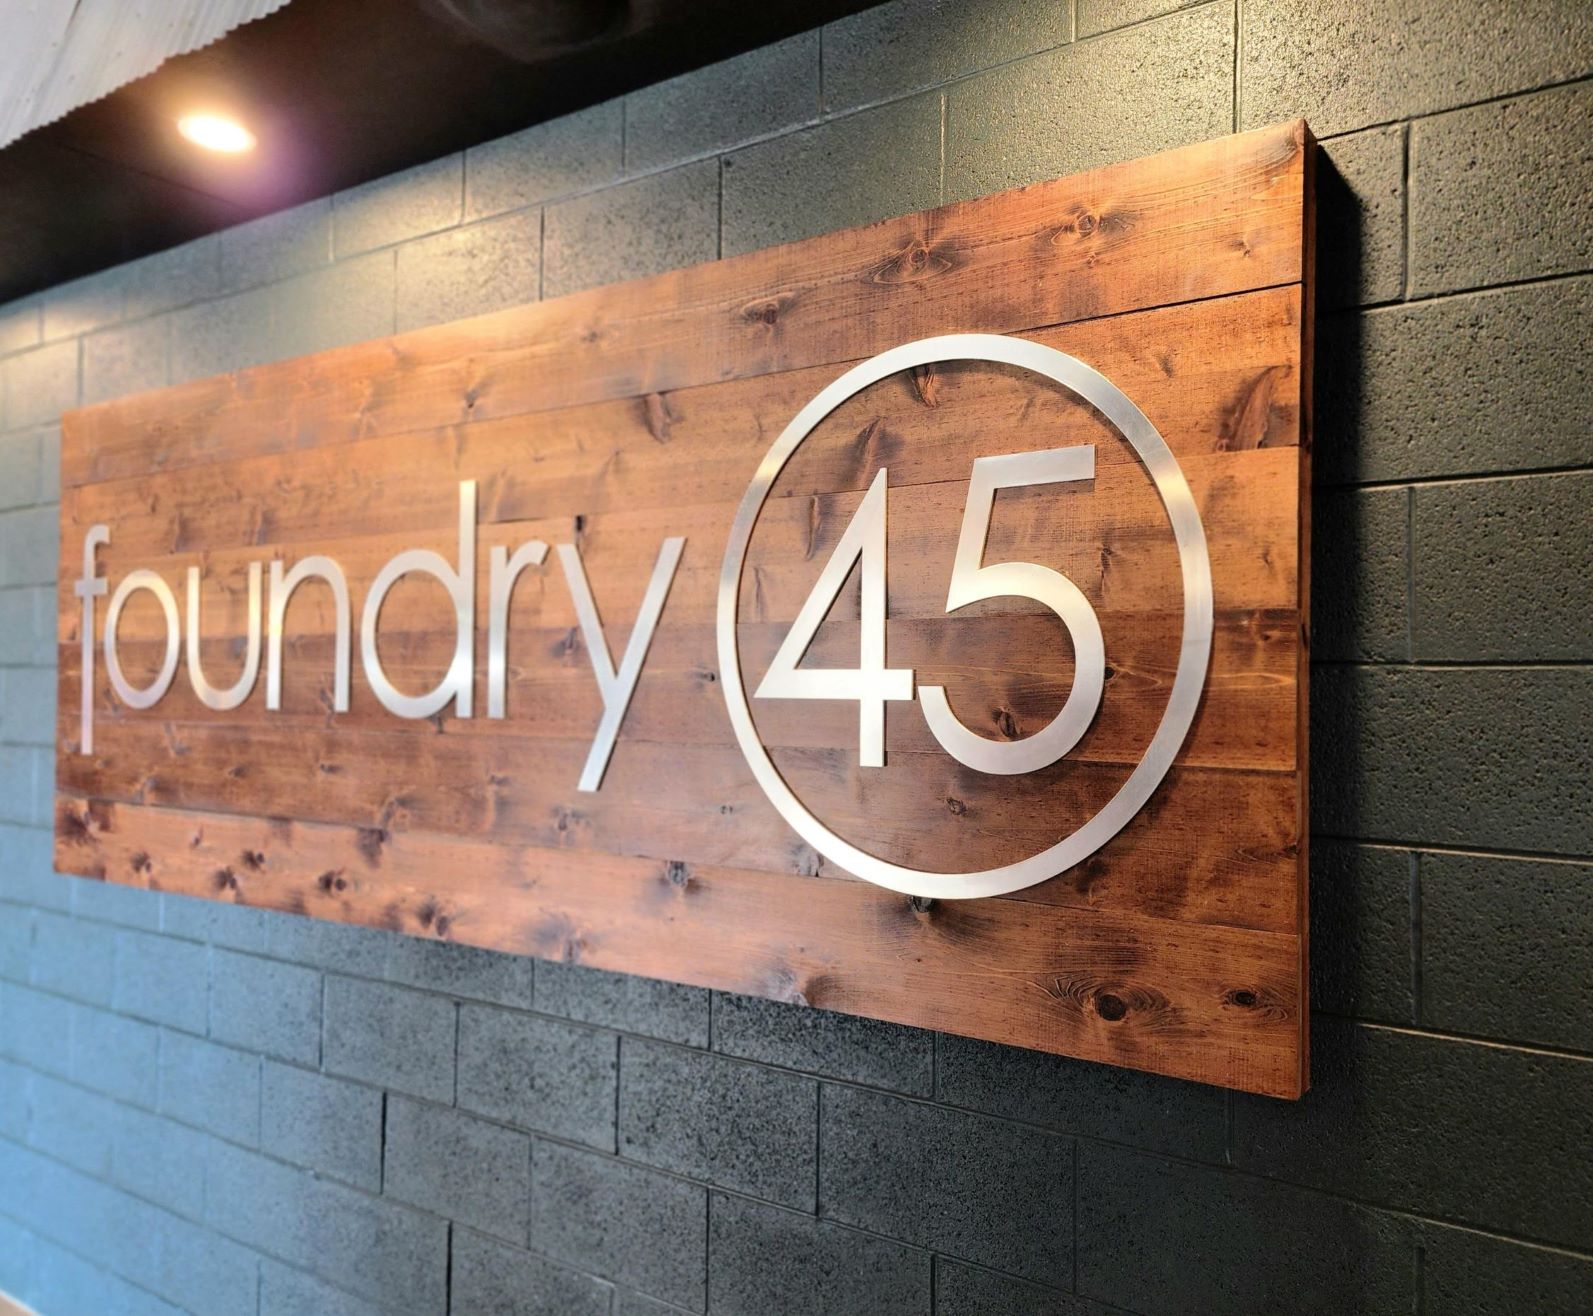 foundry 45 website